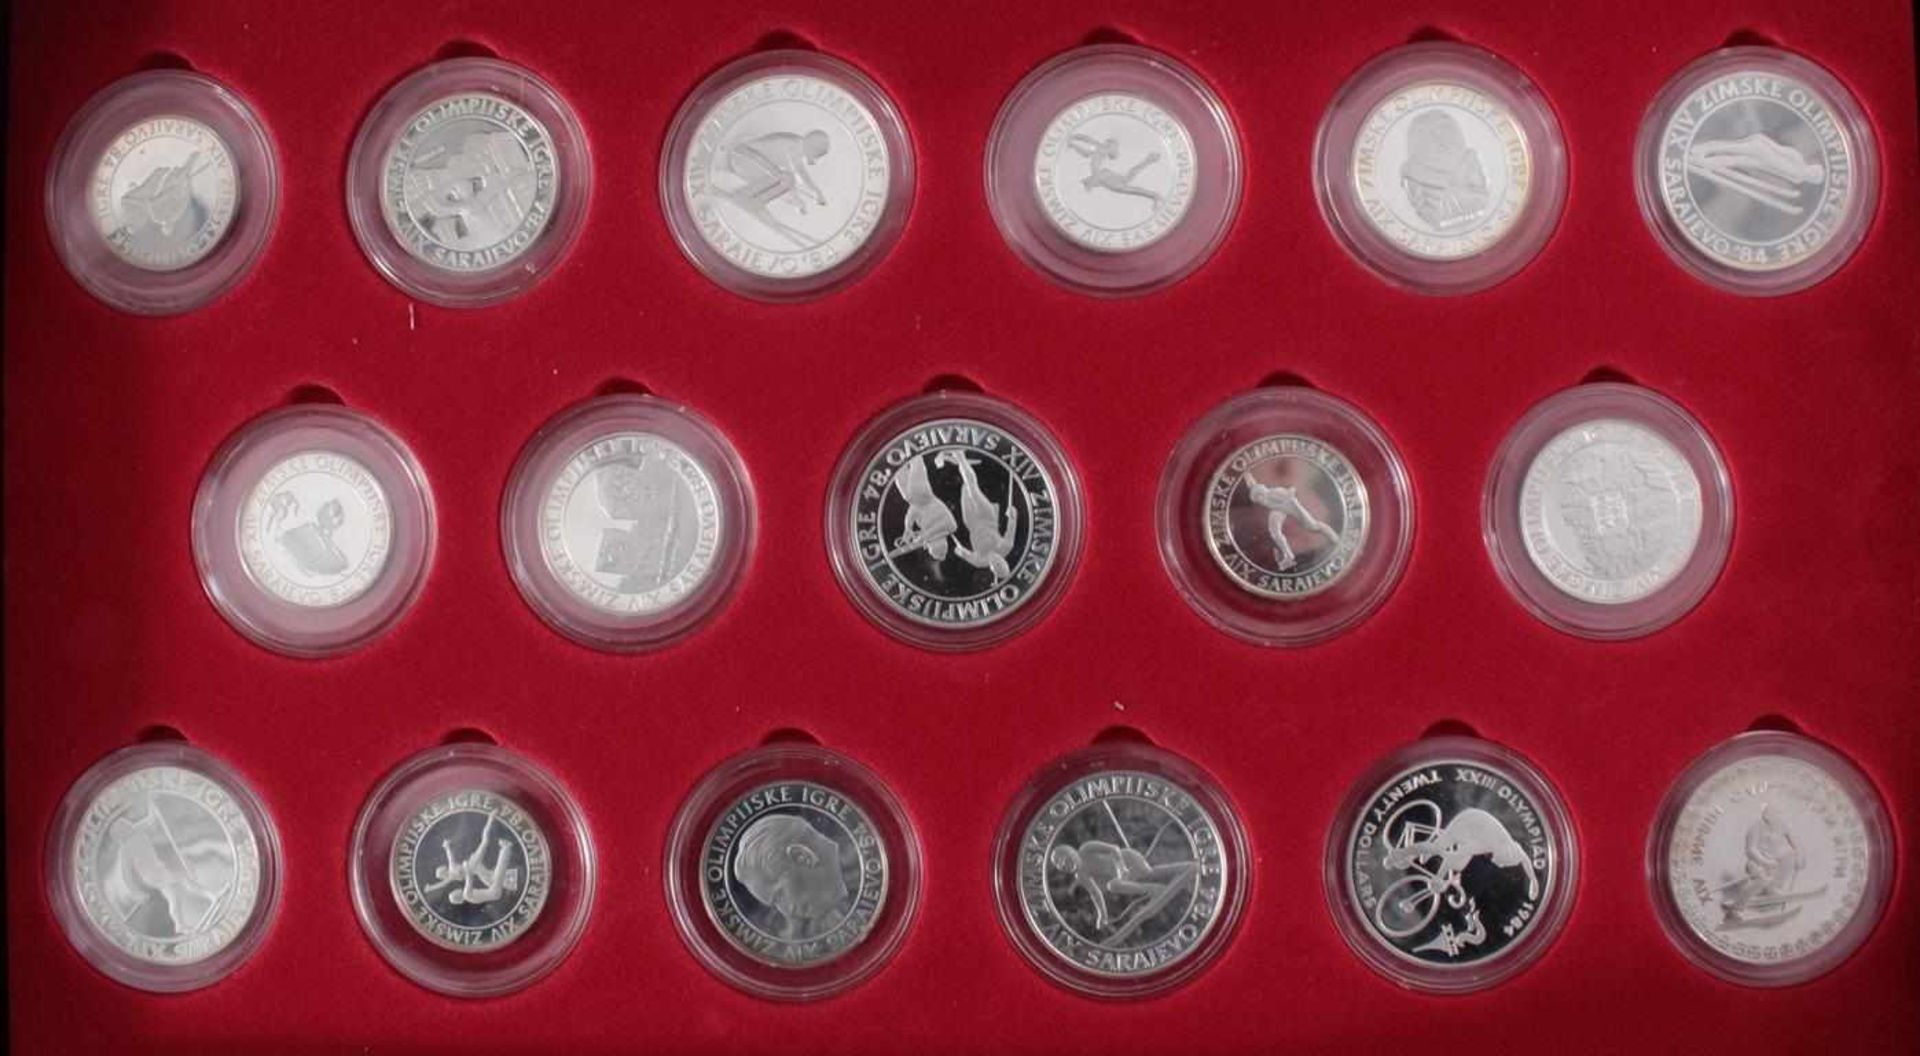 Münzkasette der Deutschen Sporthilfe zu den Olympischen Spielen 198448 Silbermünzen in PP und ST, - Bild 4 aus 5